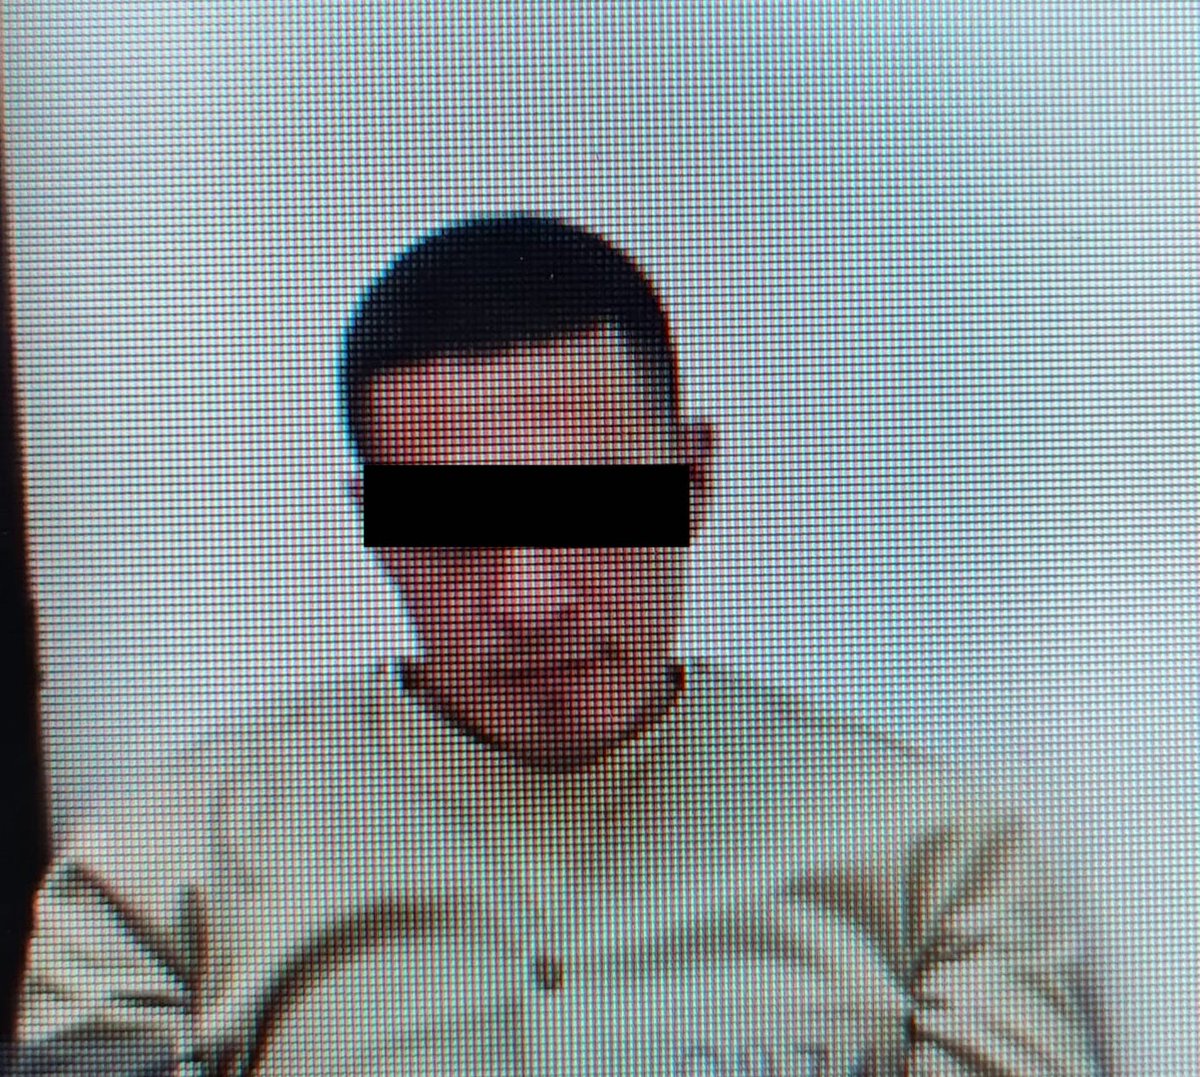 #Policiaca | Durará 67 años en prisión Lorenzo de Jesús por múltiples homicidios en las Cachimbas
🔗laextraob.com/sentencia-de-6…